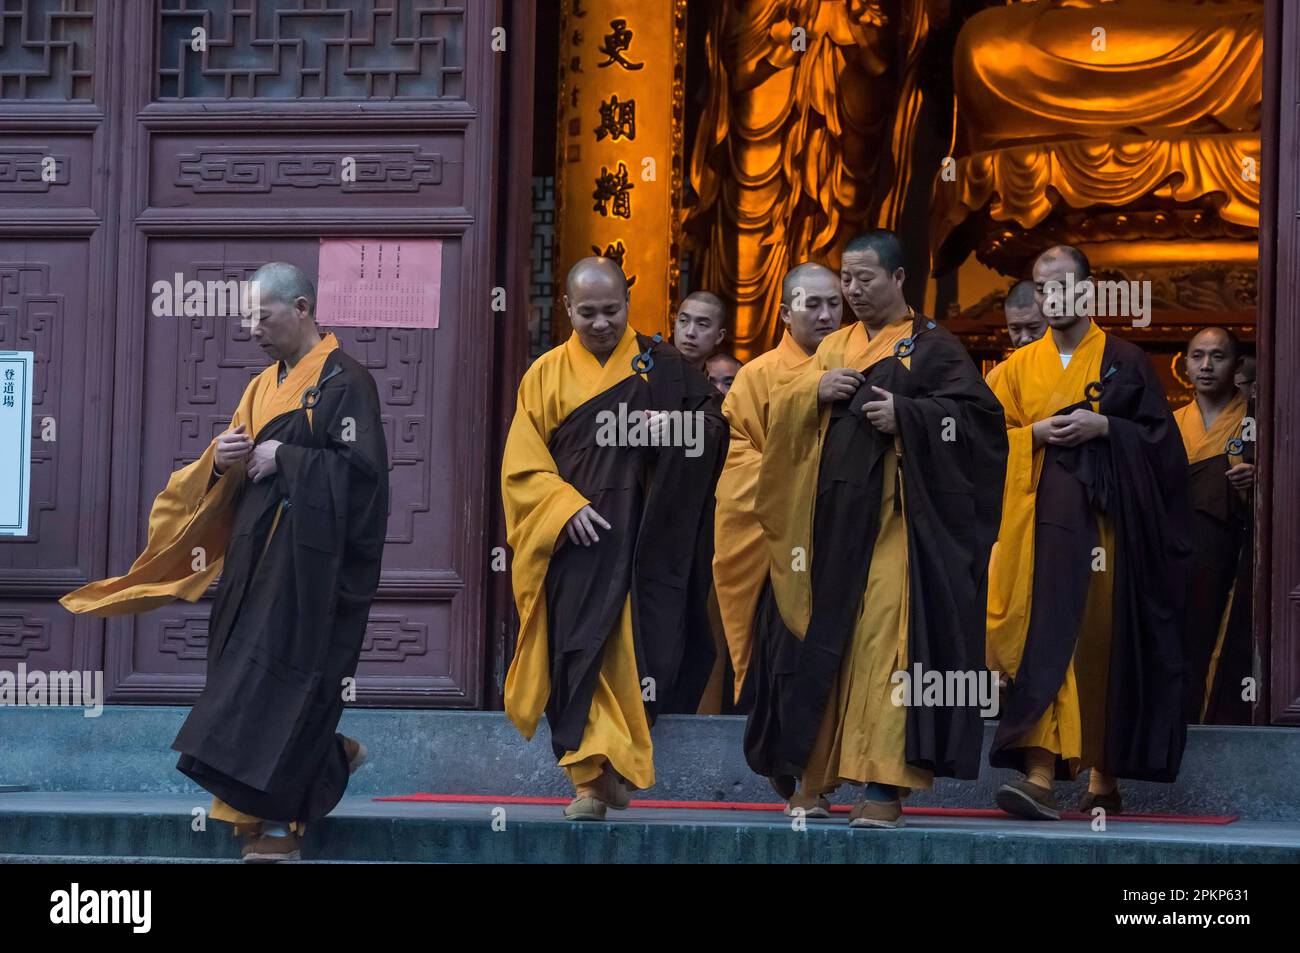 Devout monks leaving a temple, Lingying Monastery, Xihu, Hangzhou, Zhejiang Province, China, Asia Stock Photo